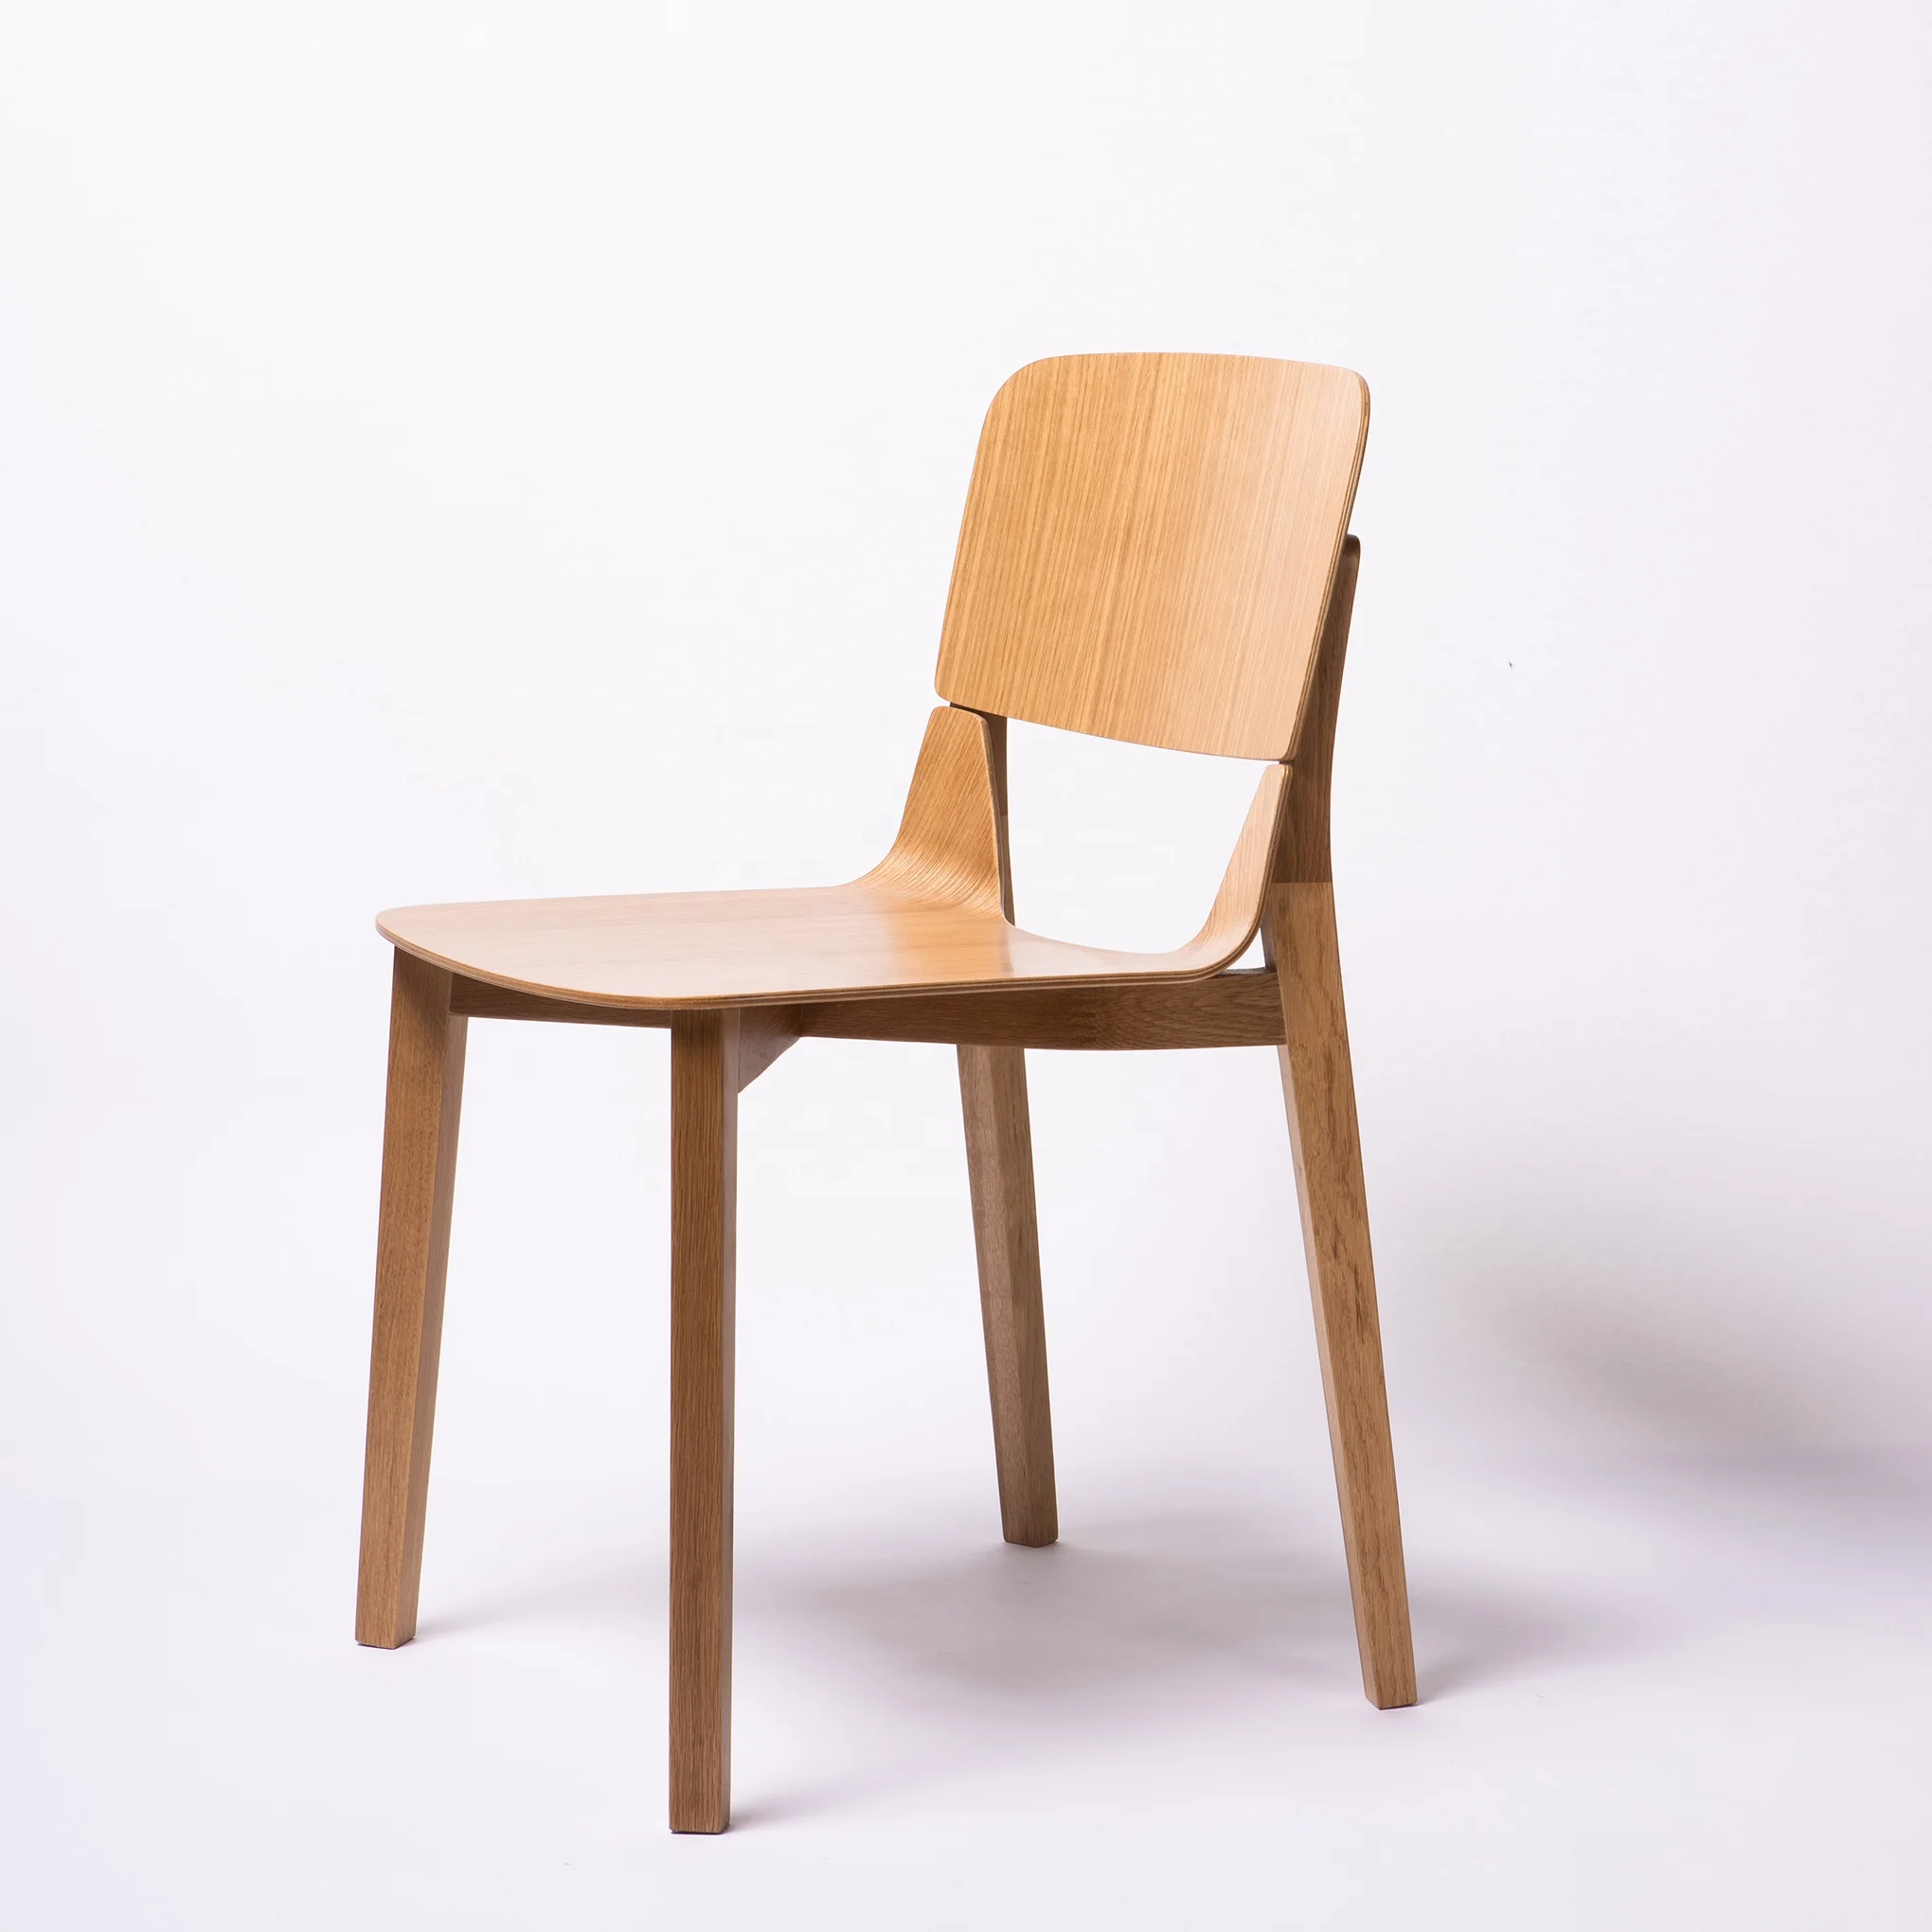 斯堪的纳维亚家居装饰坚固耐用足够的餐厅椅实木橡木餐椅北欧风格木制